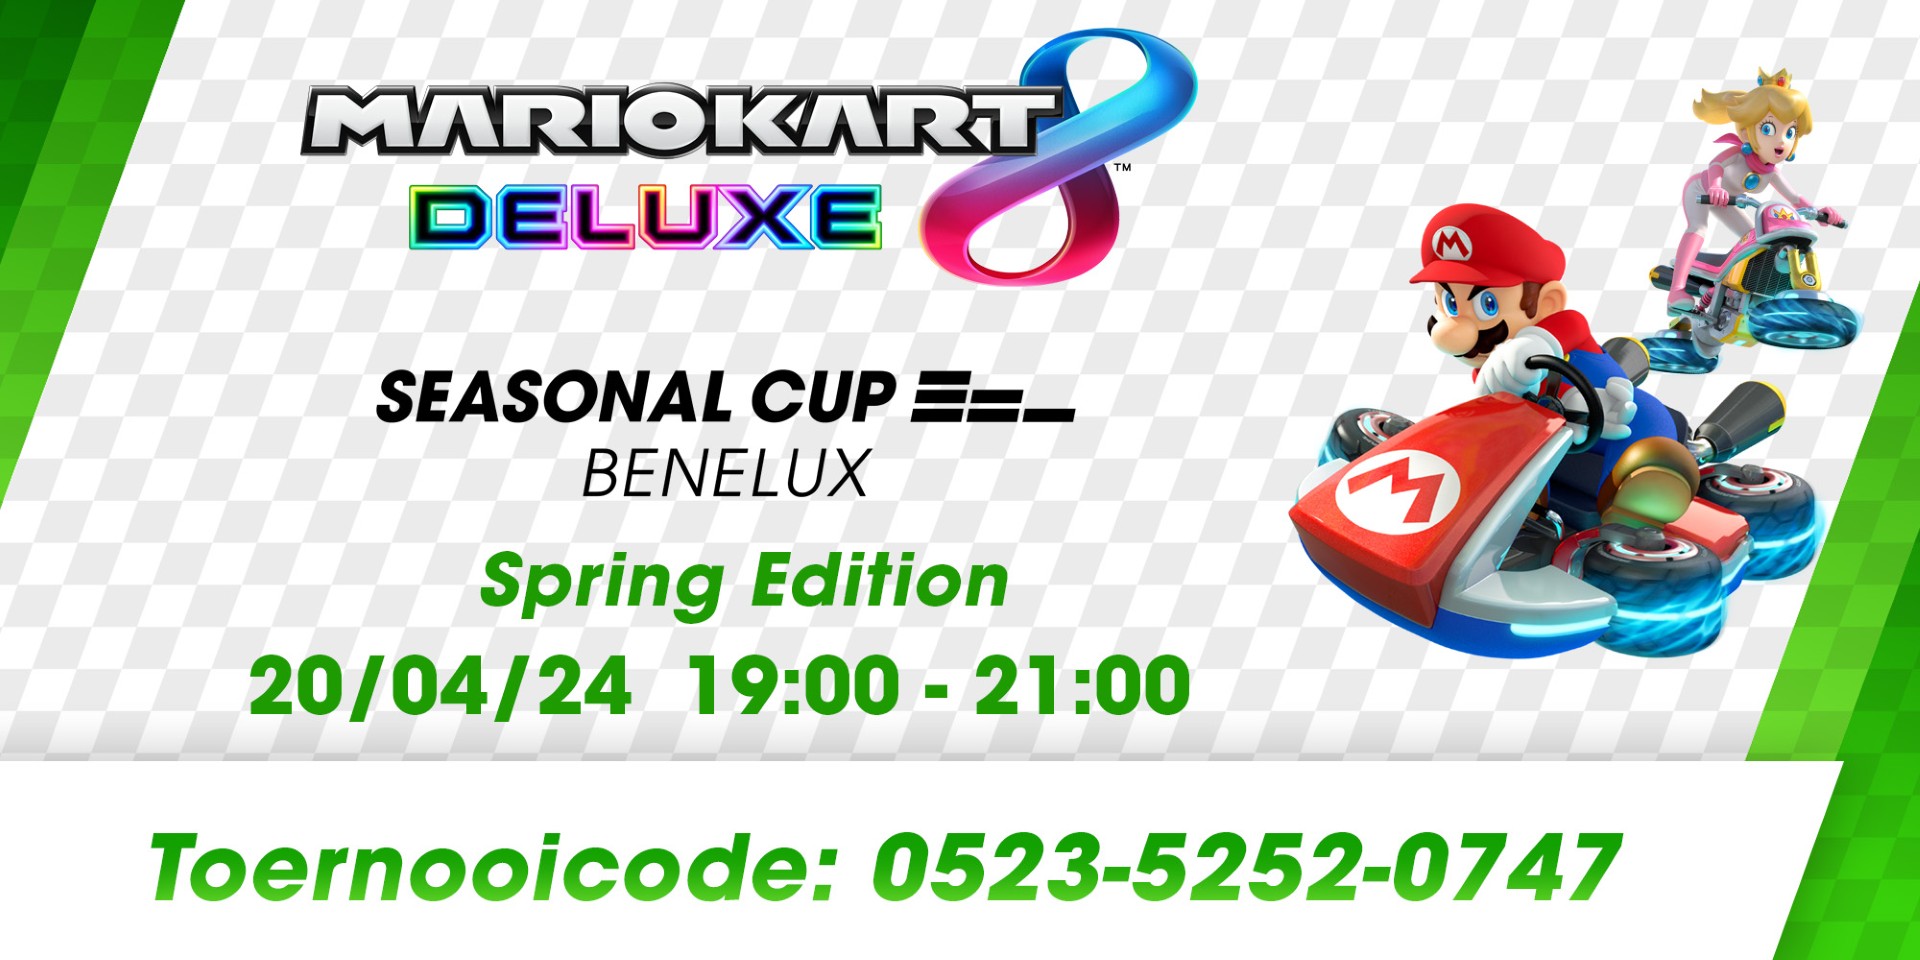 Zaterdag is het weer tijd voor de Mario Kart 8 Deluxe Seasonal Cup Benelux